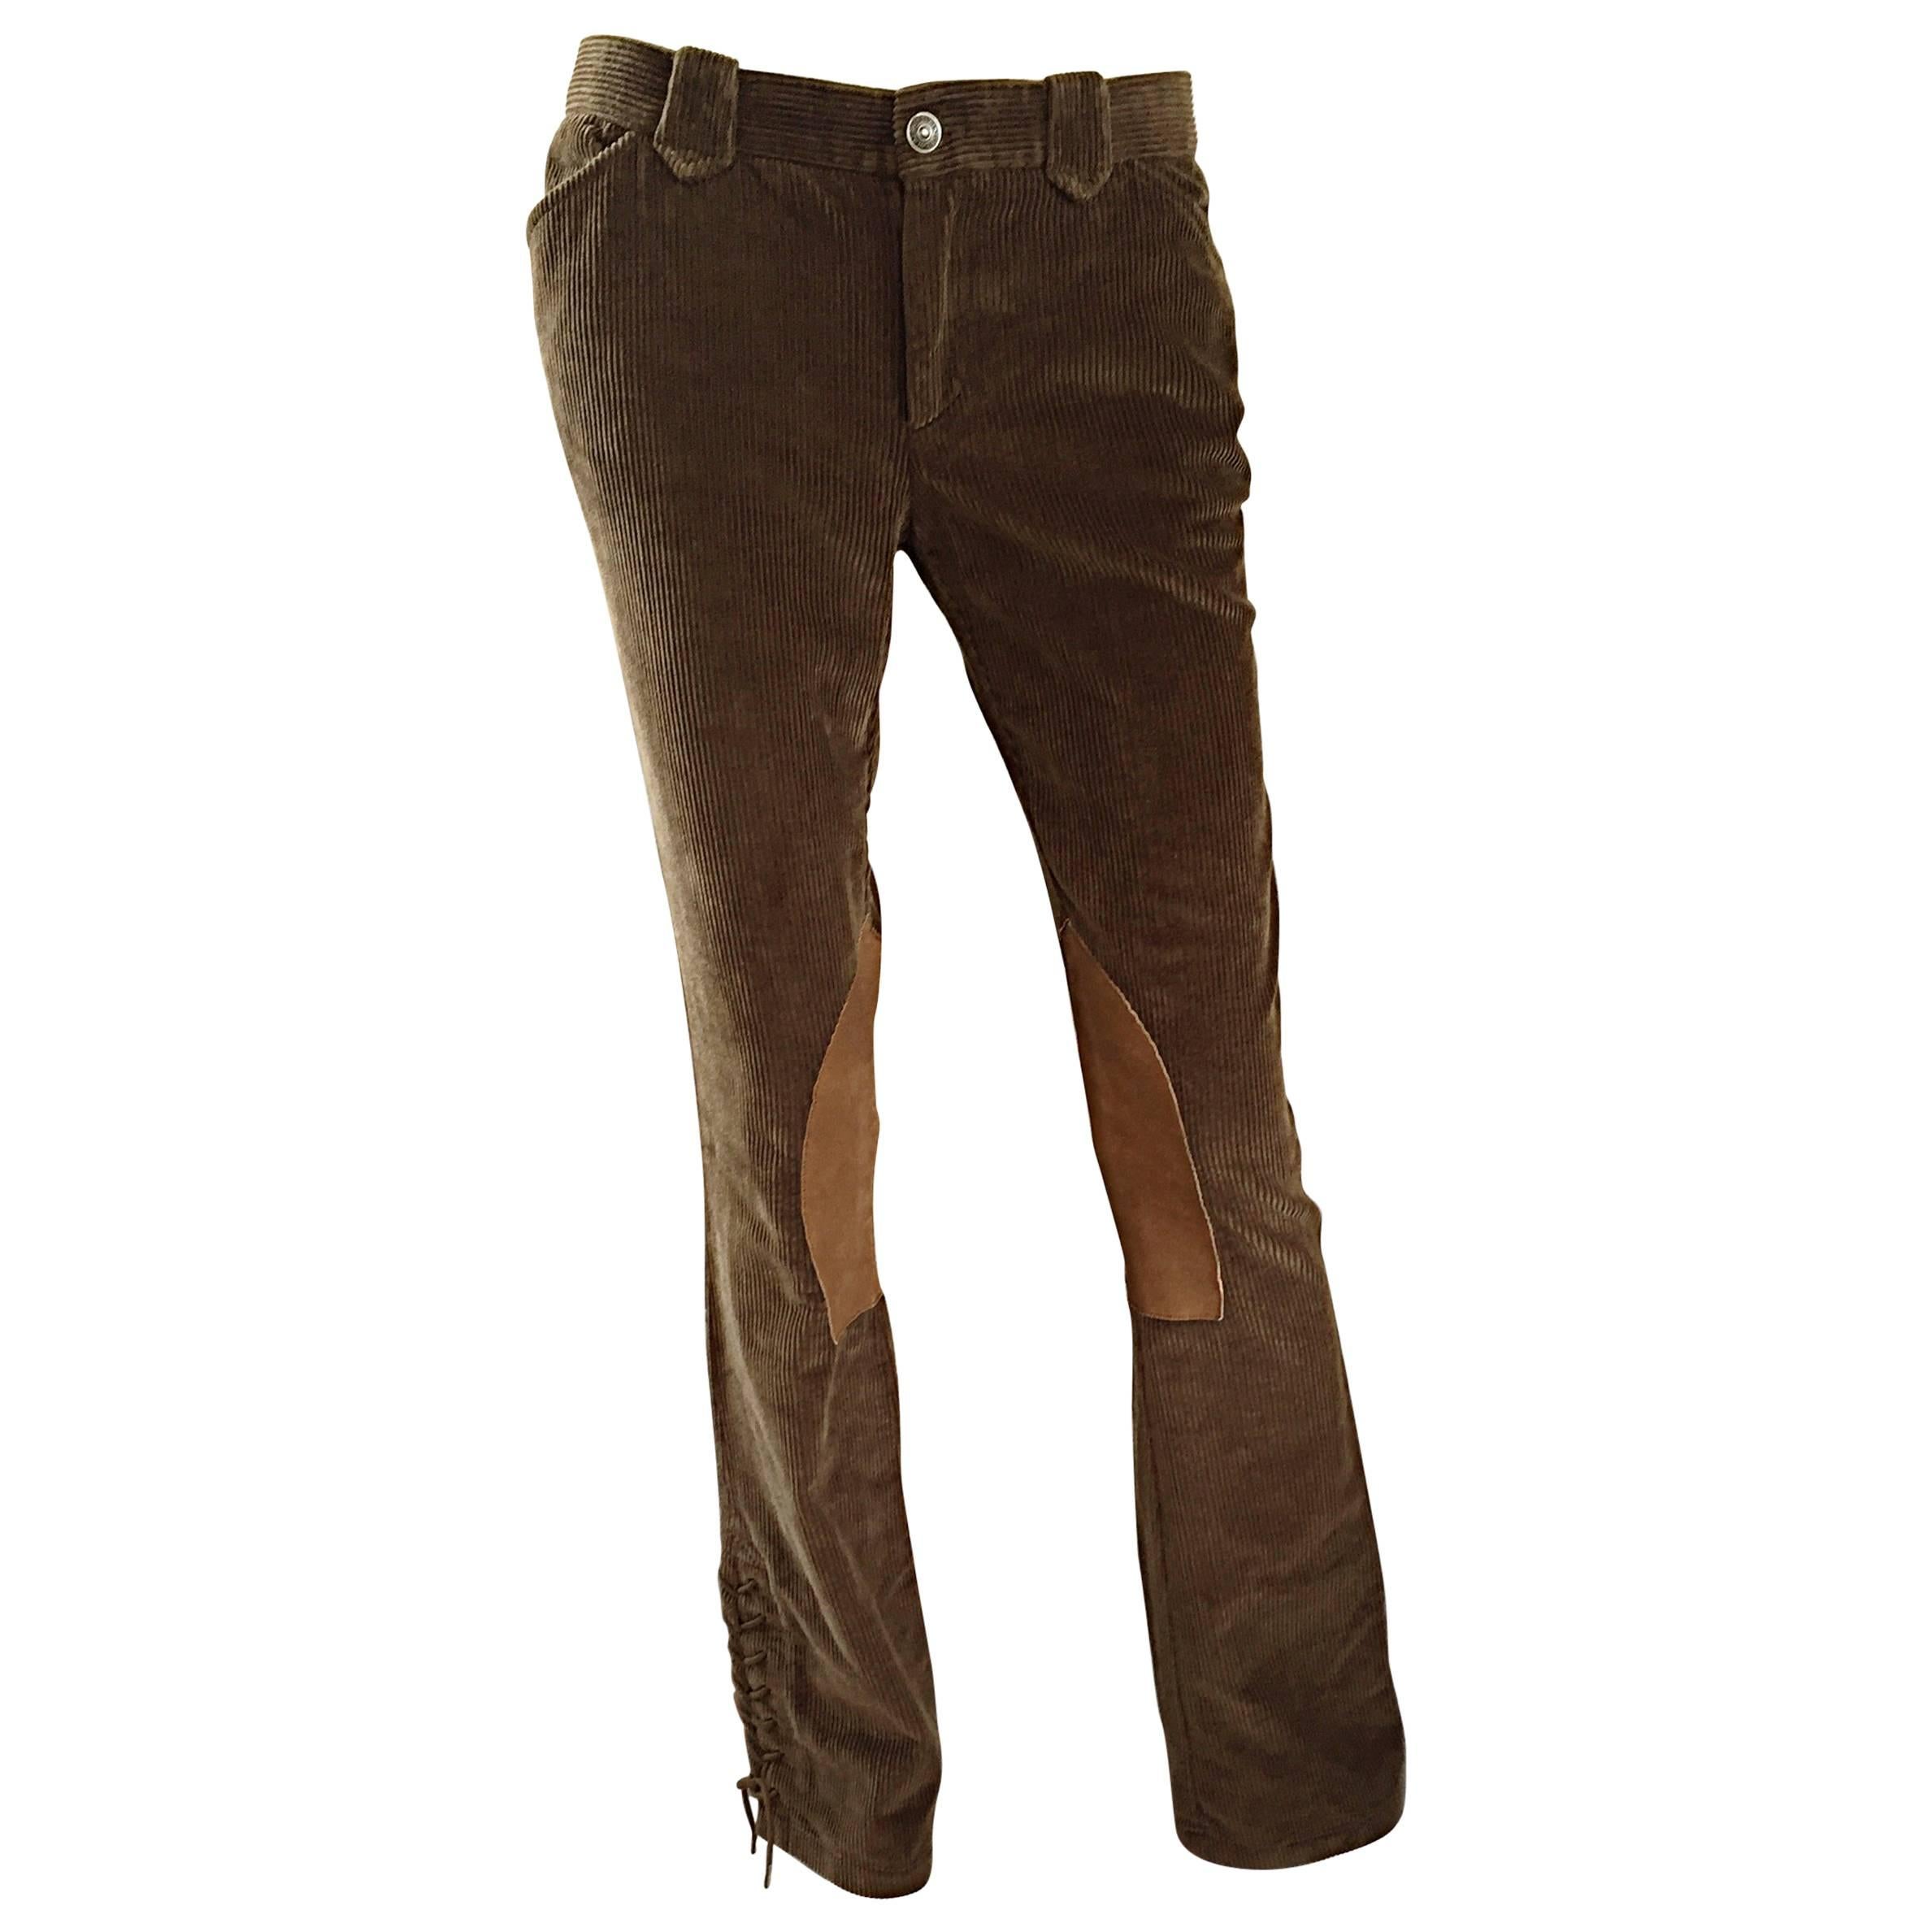 Top 51+ imagen ralph lauren leather pants brown - Thptnganamst.edu.vn